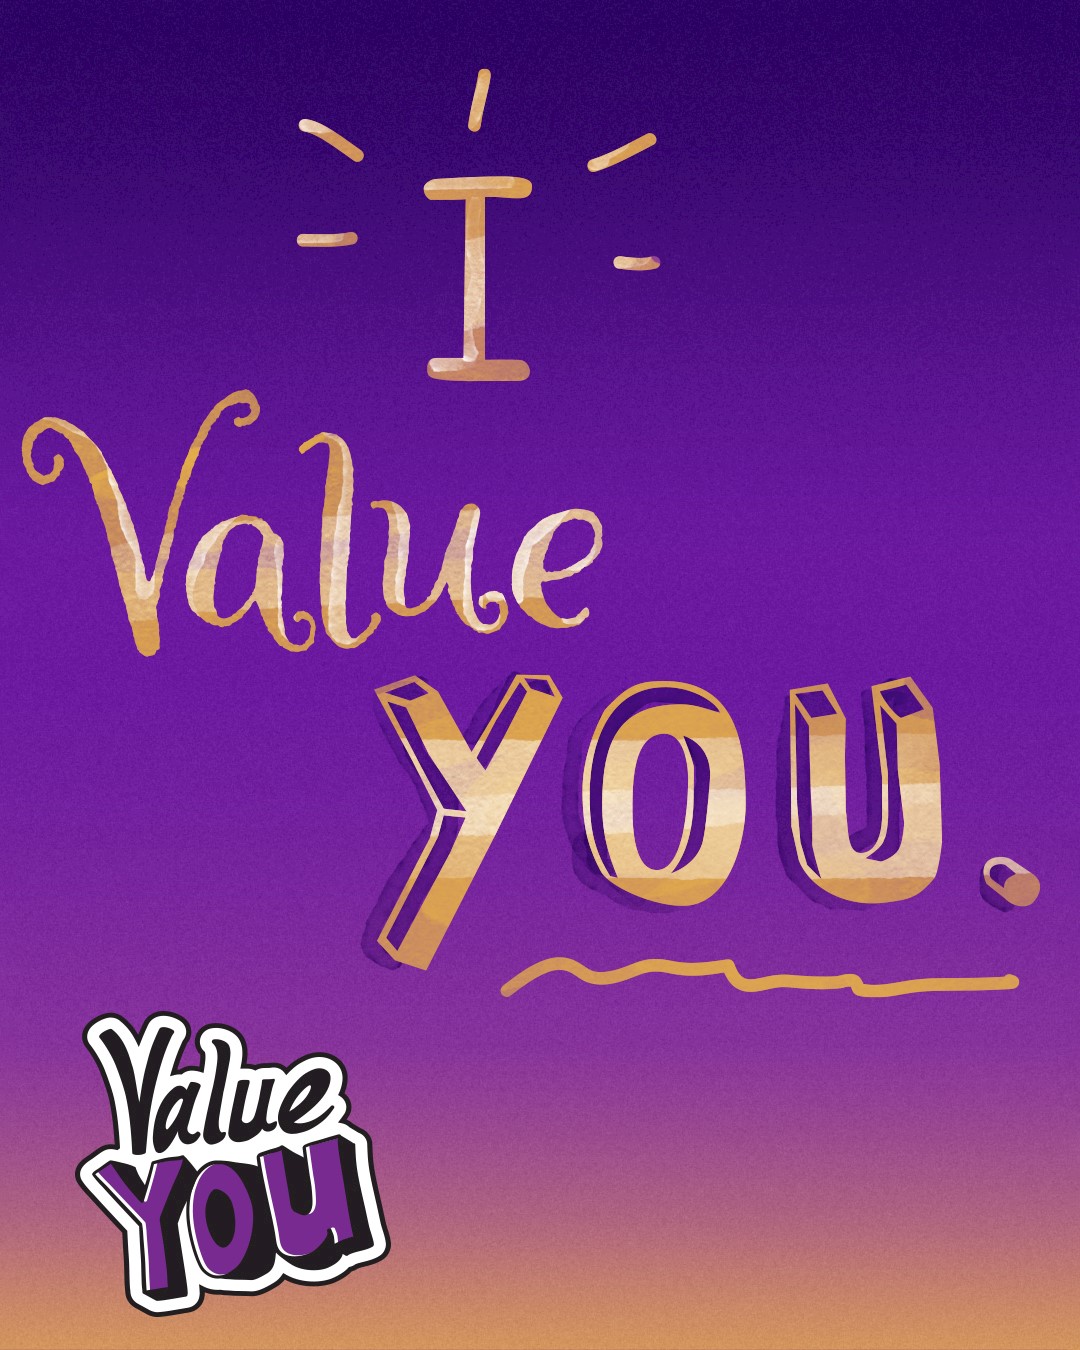 I value you.